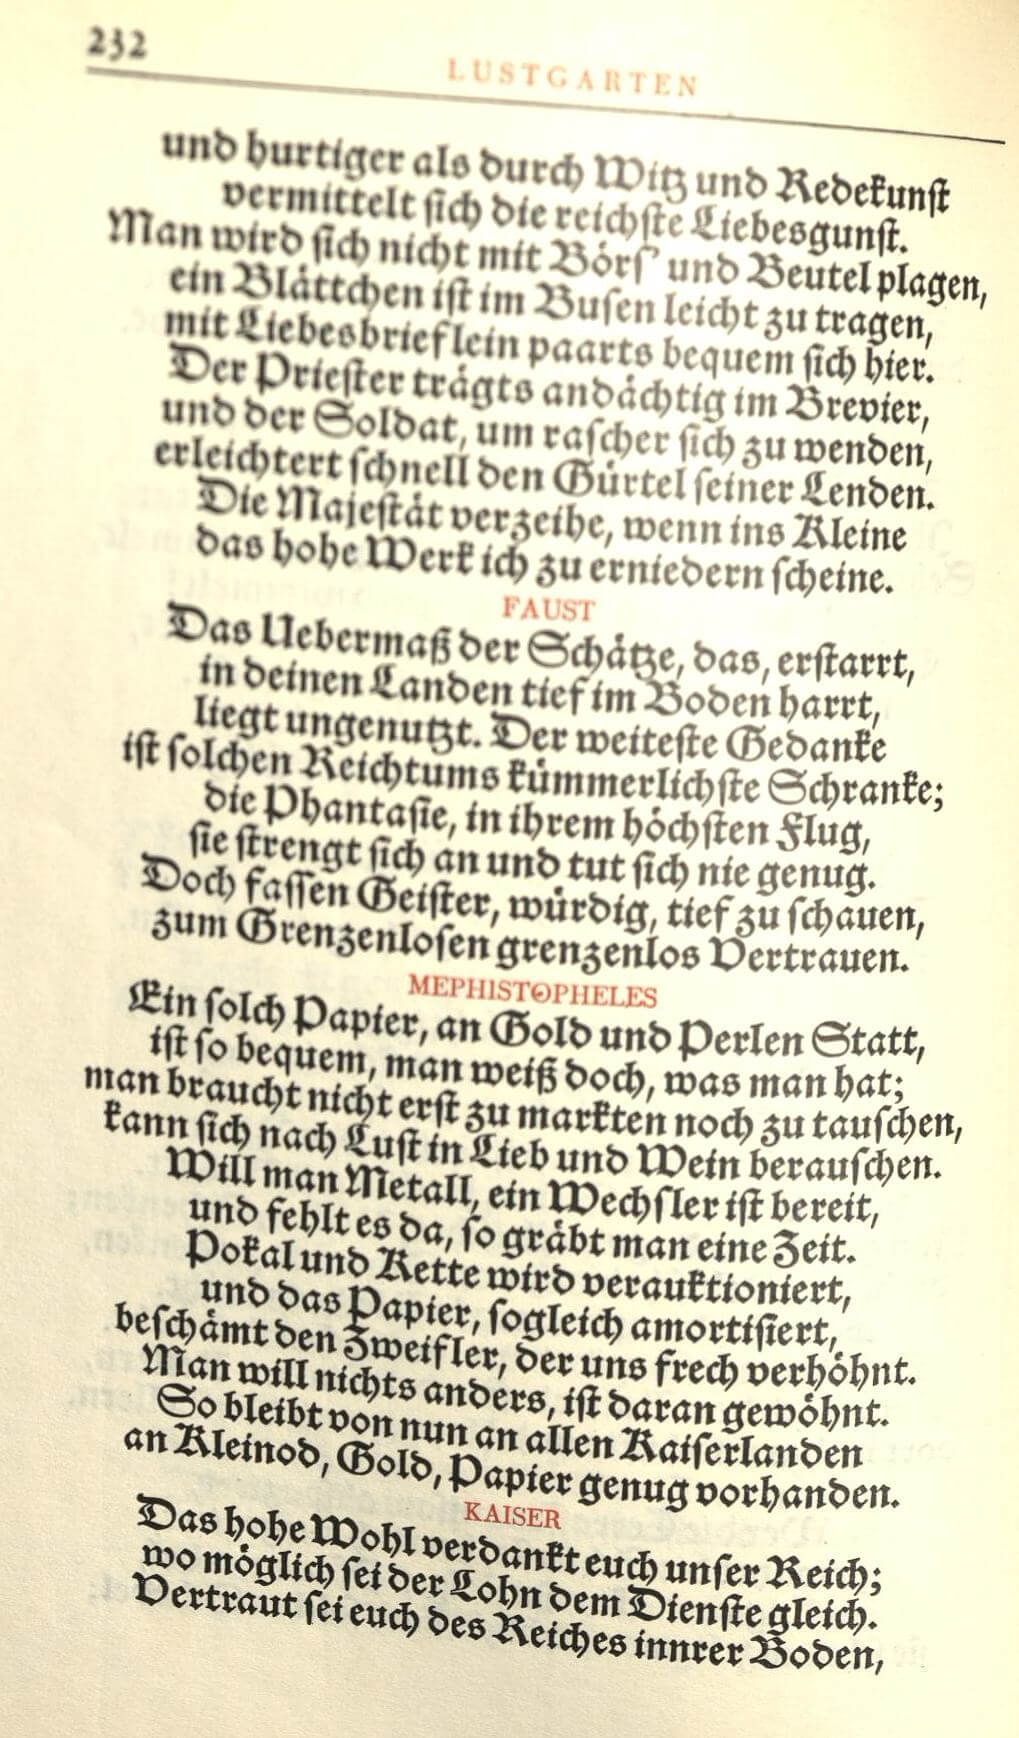 Faust. Hundertjahrs-Ausgabe. Mit einer Einleitung Faust und die Kunst von Max von Boehn